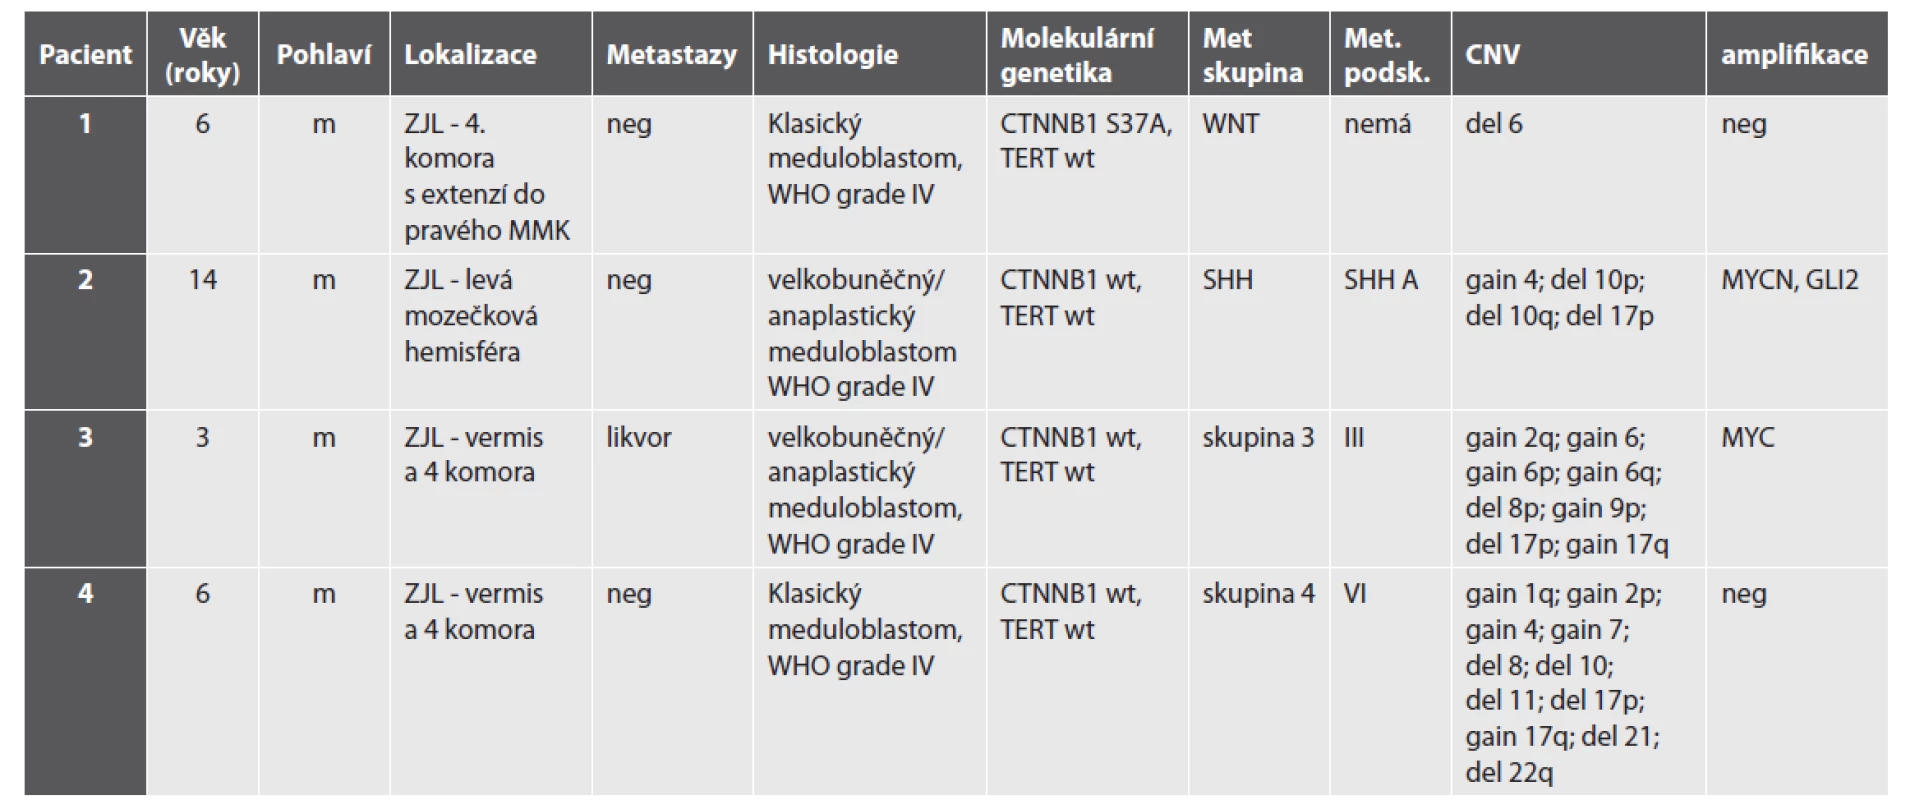 Klinický, histologický a molekulárně biologický nález pacientů s meduloblastomem.